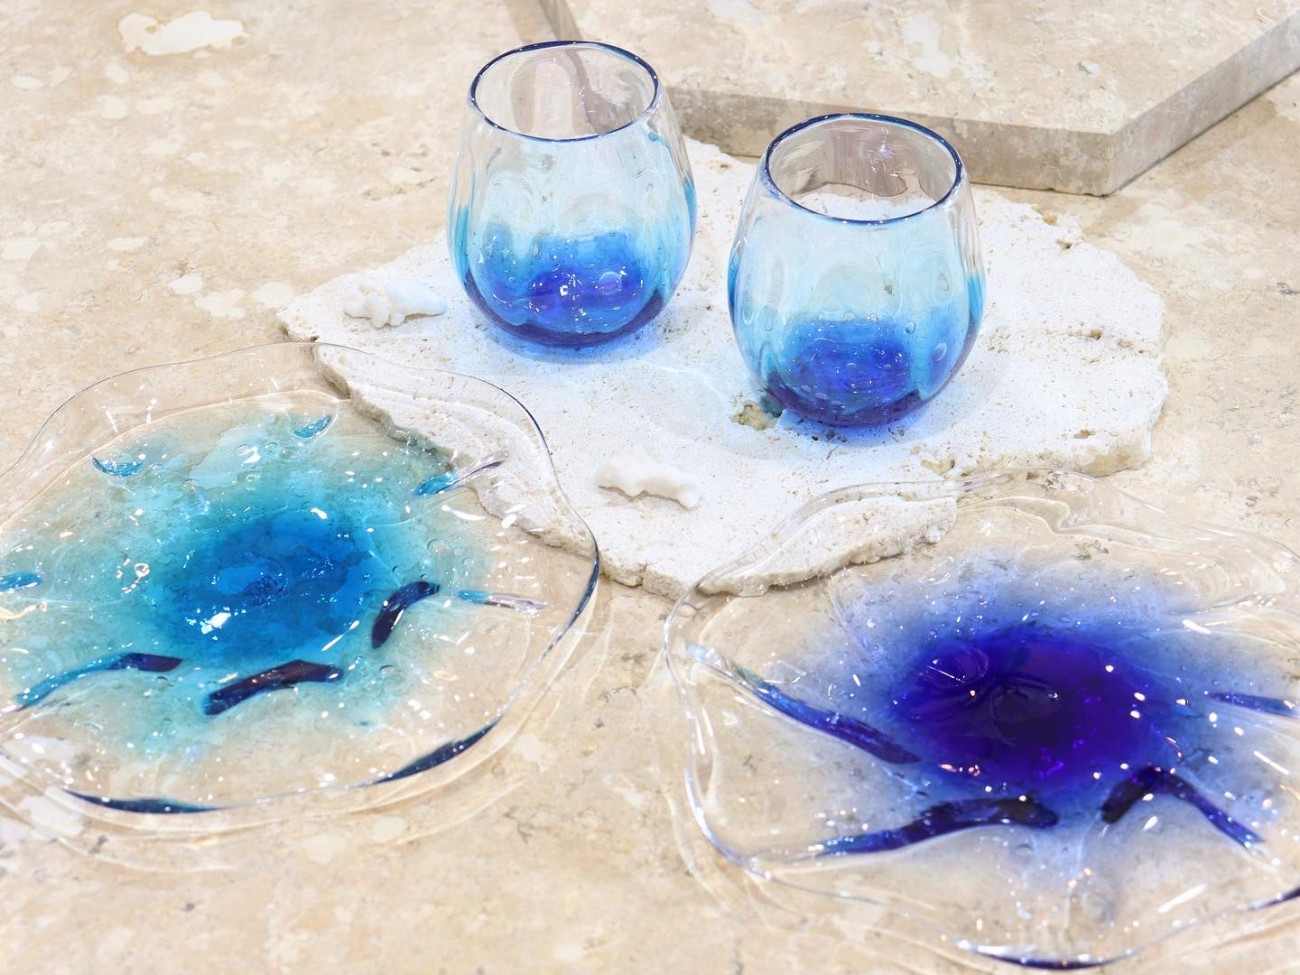 話題の行列 沖縄旅行の思い出に 琉球ガラスの一輪挿し 花瓶